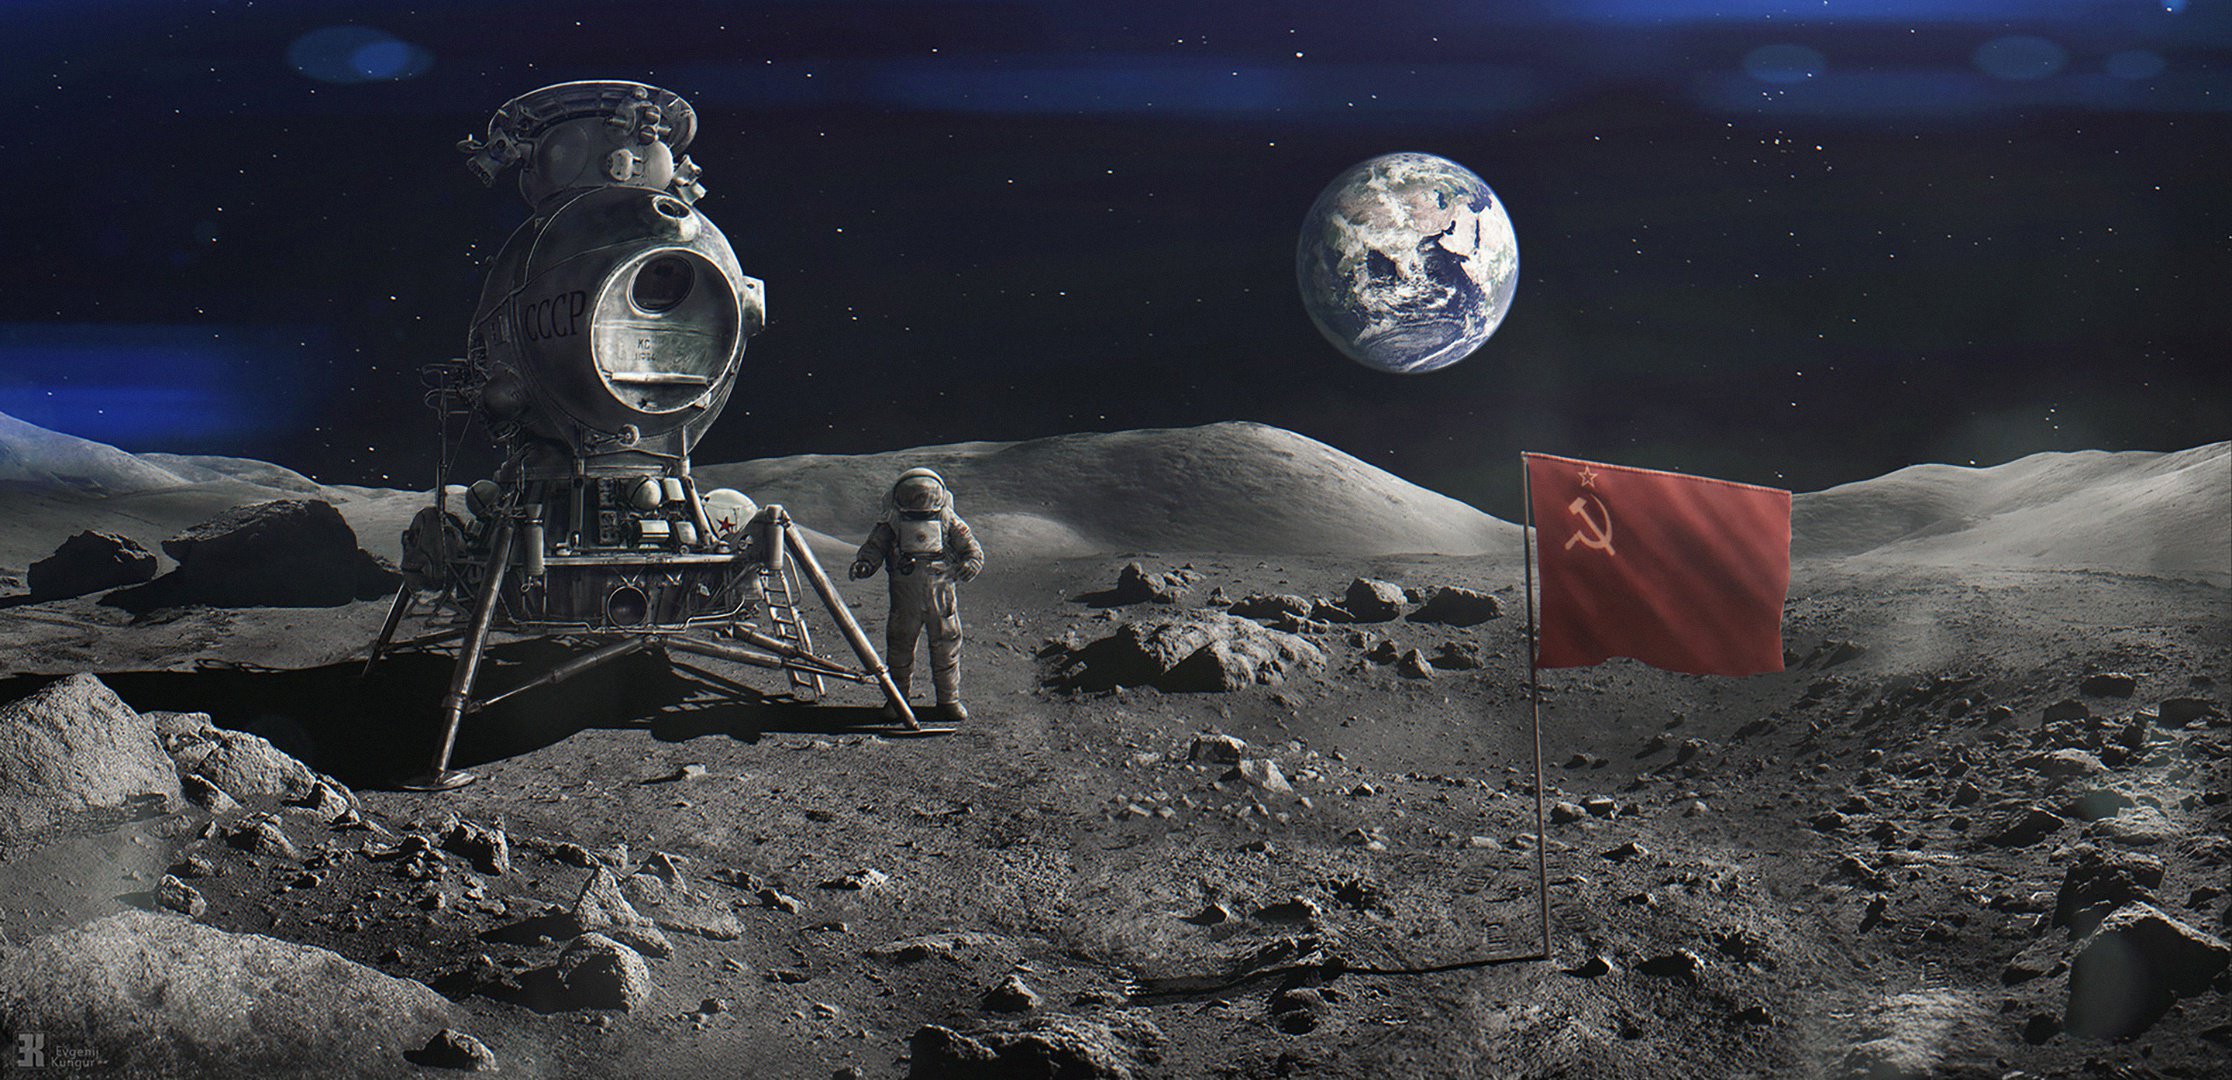 Perché gli astronauti dell'URSS non arrivati sulla Luna?